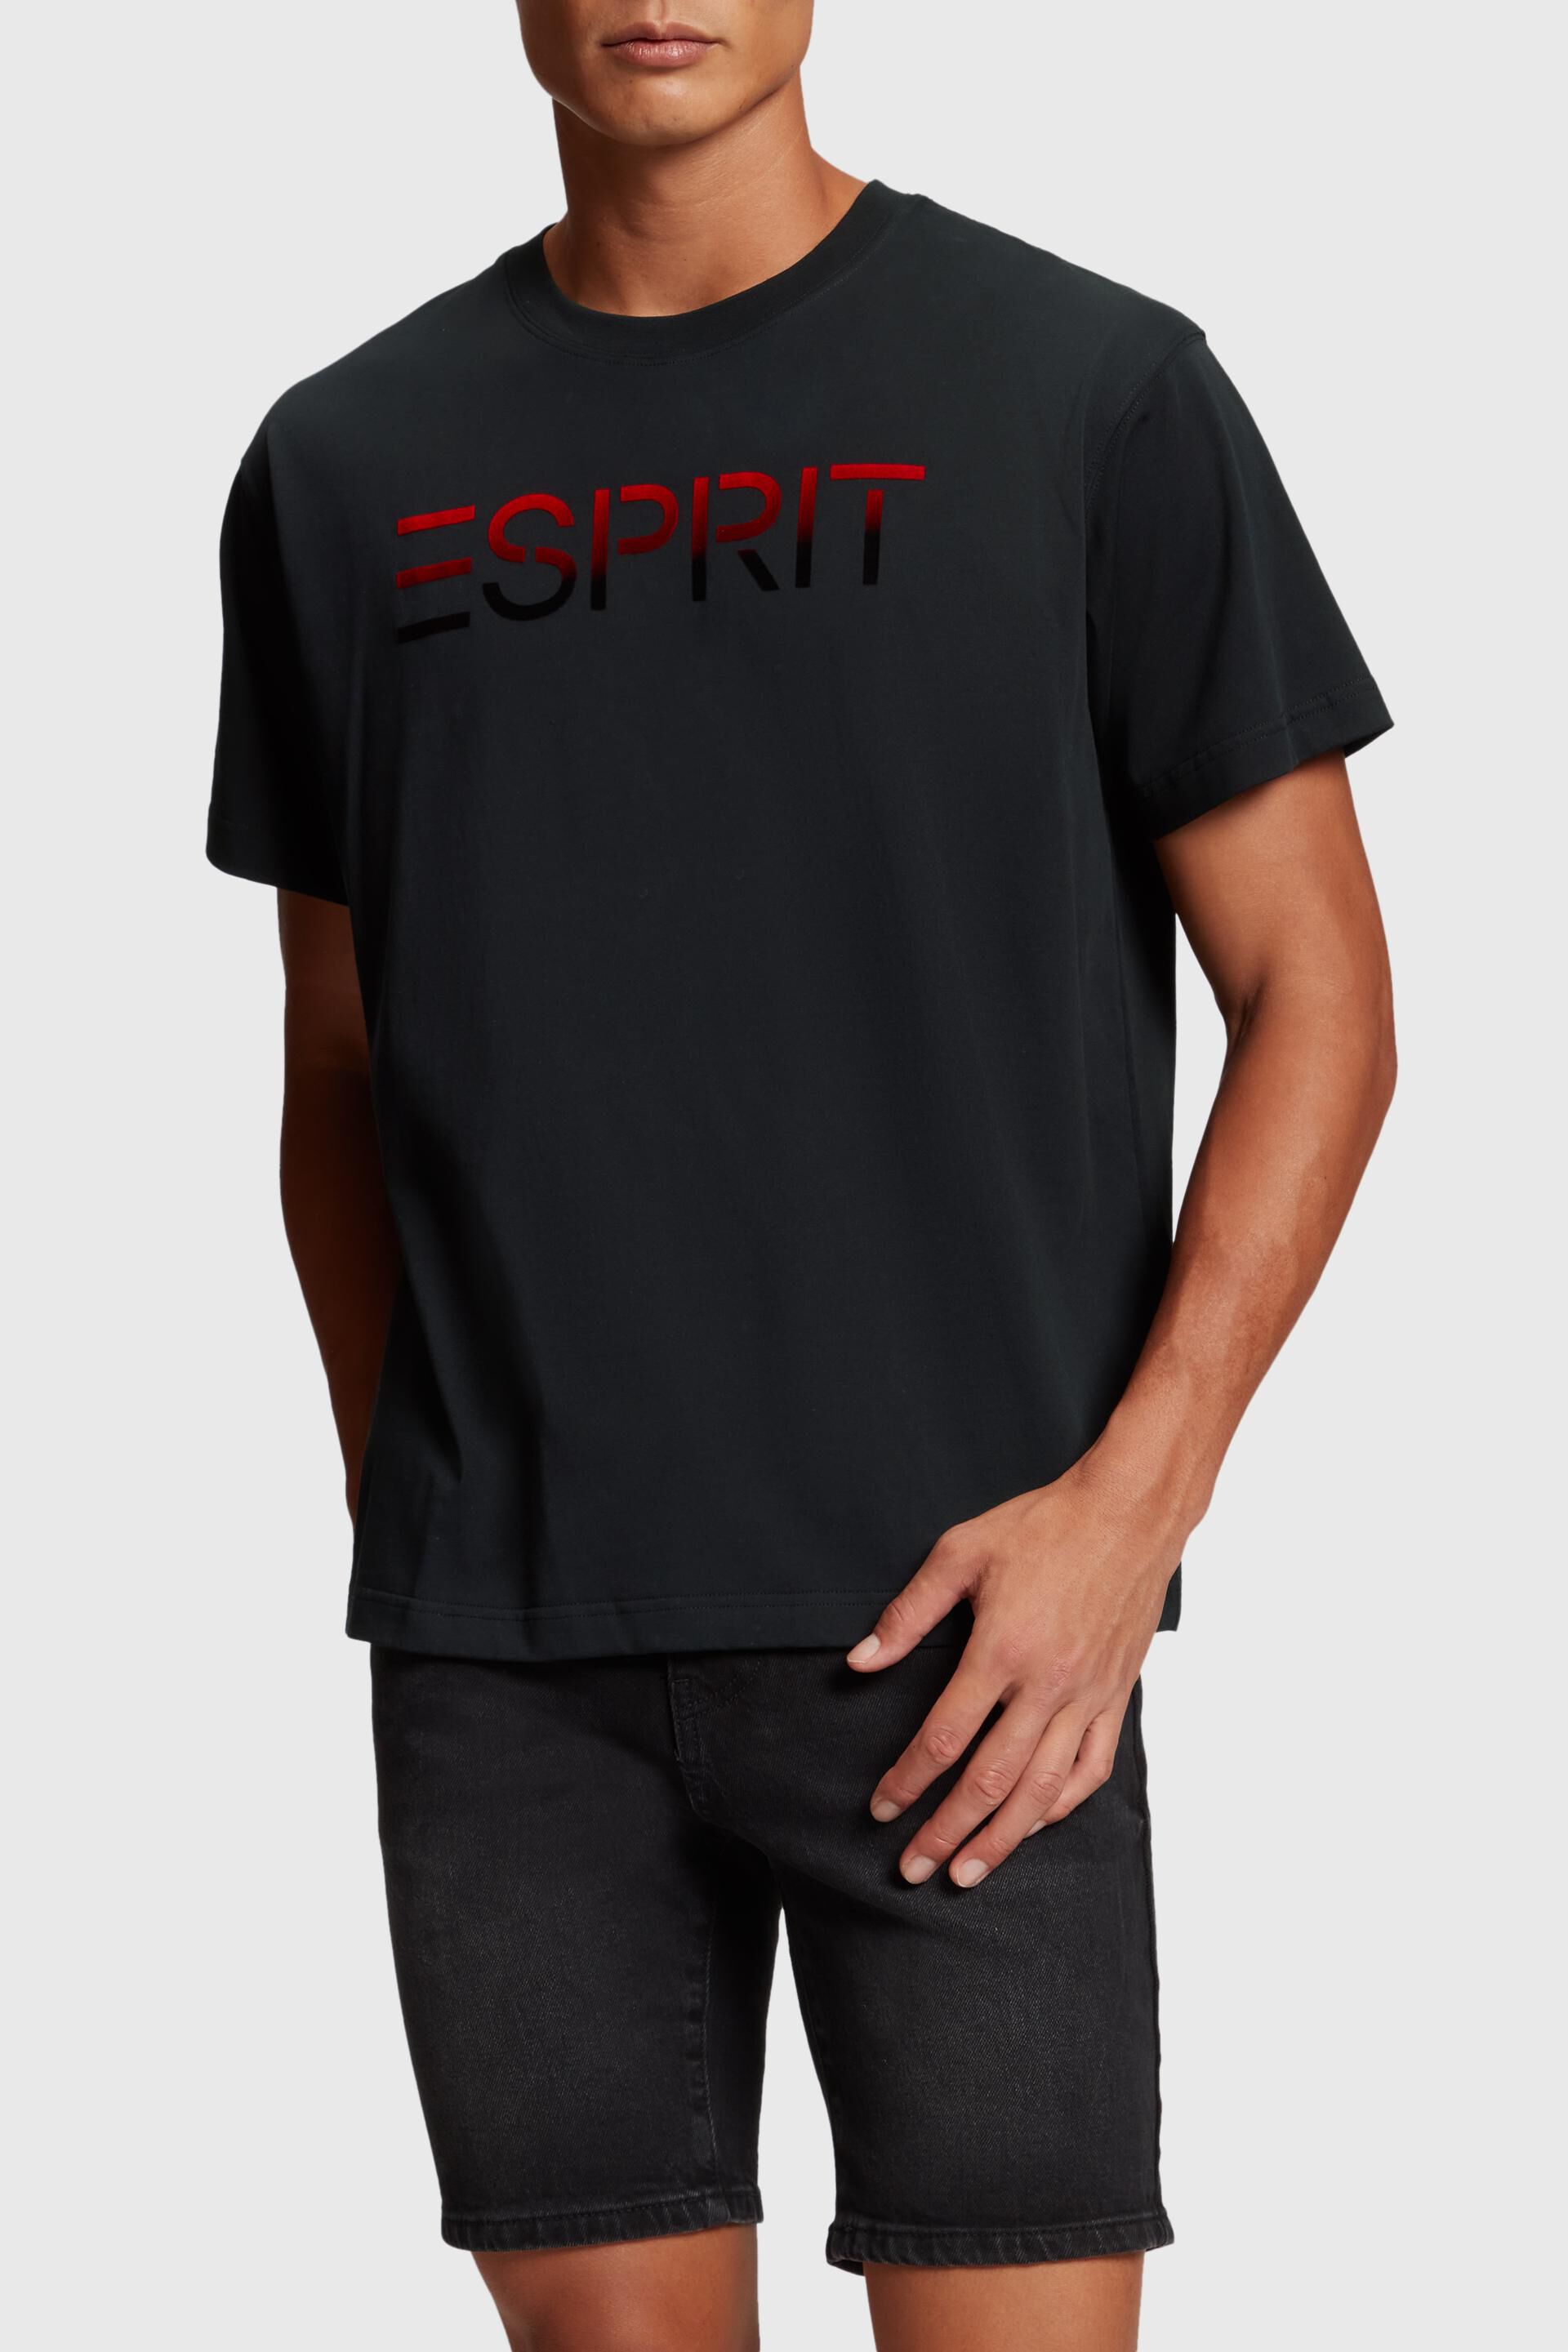 Esprit applique flocked logo Chest t-shirt